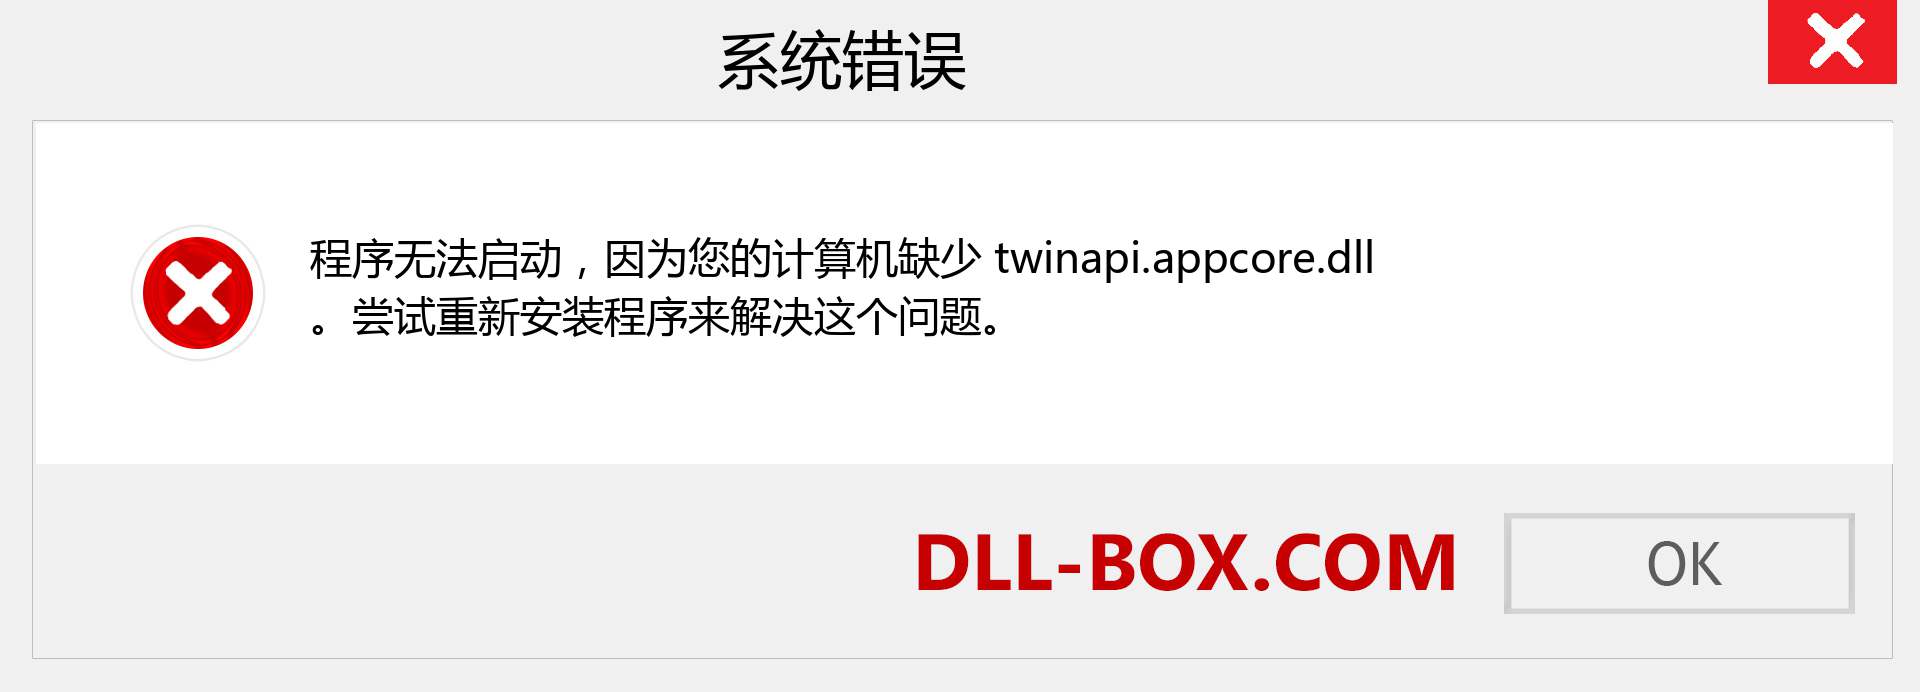 twinapi.appcore.dll 文件丢失？。 适用于 Windows 7、8、10 的下载 - 修复 Windows、照片、图像上的 twinapi.appcore dll 丢失错误